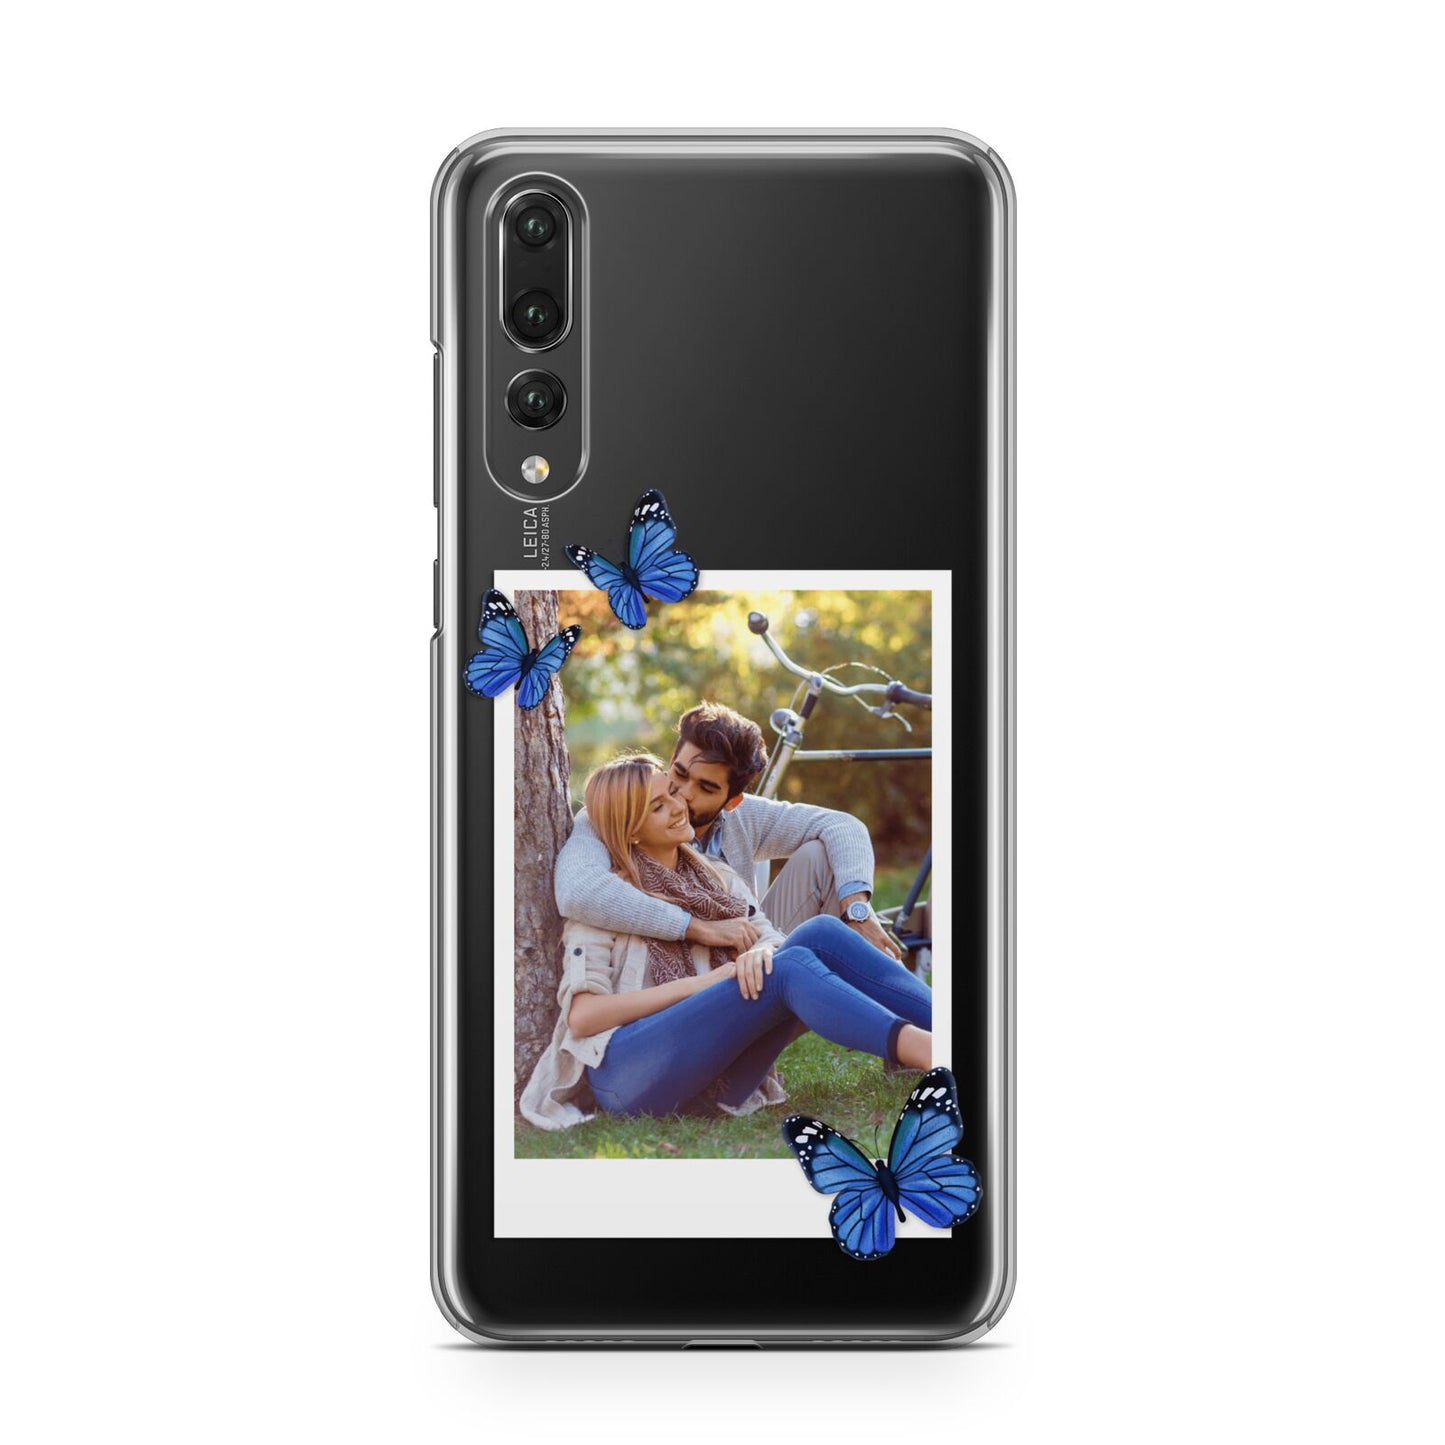 Polaroid Photo Huawei P20 Pro Phone Case